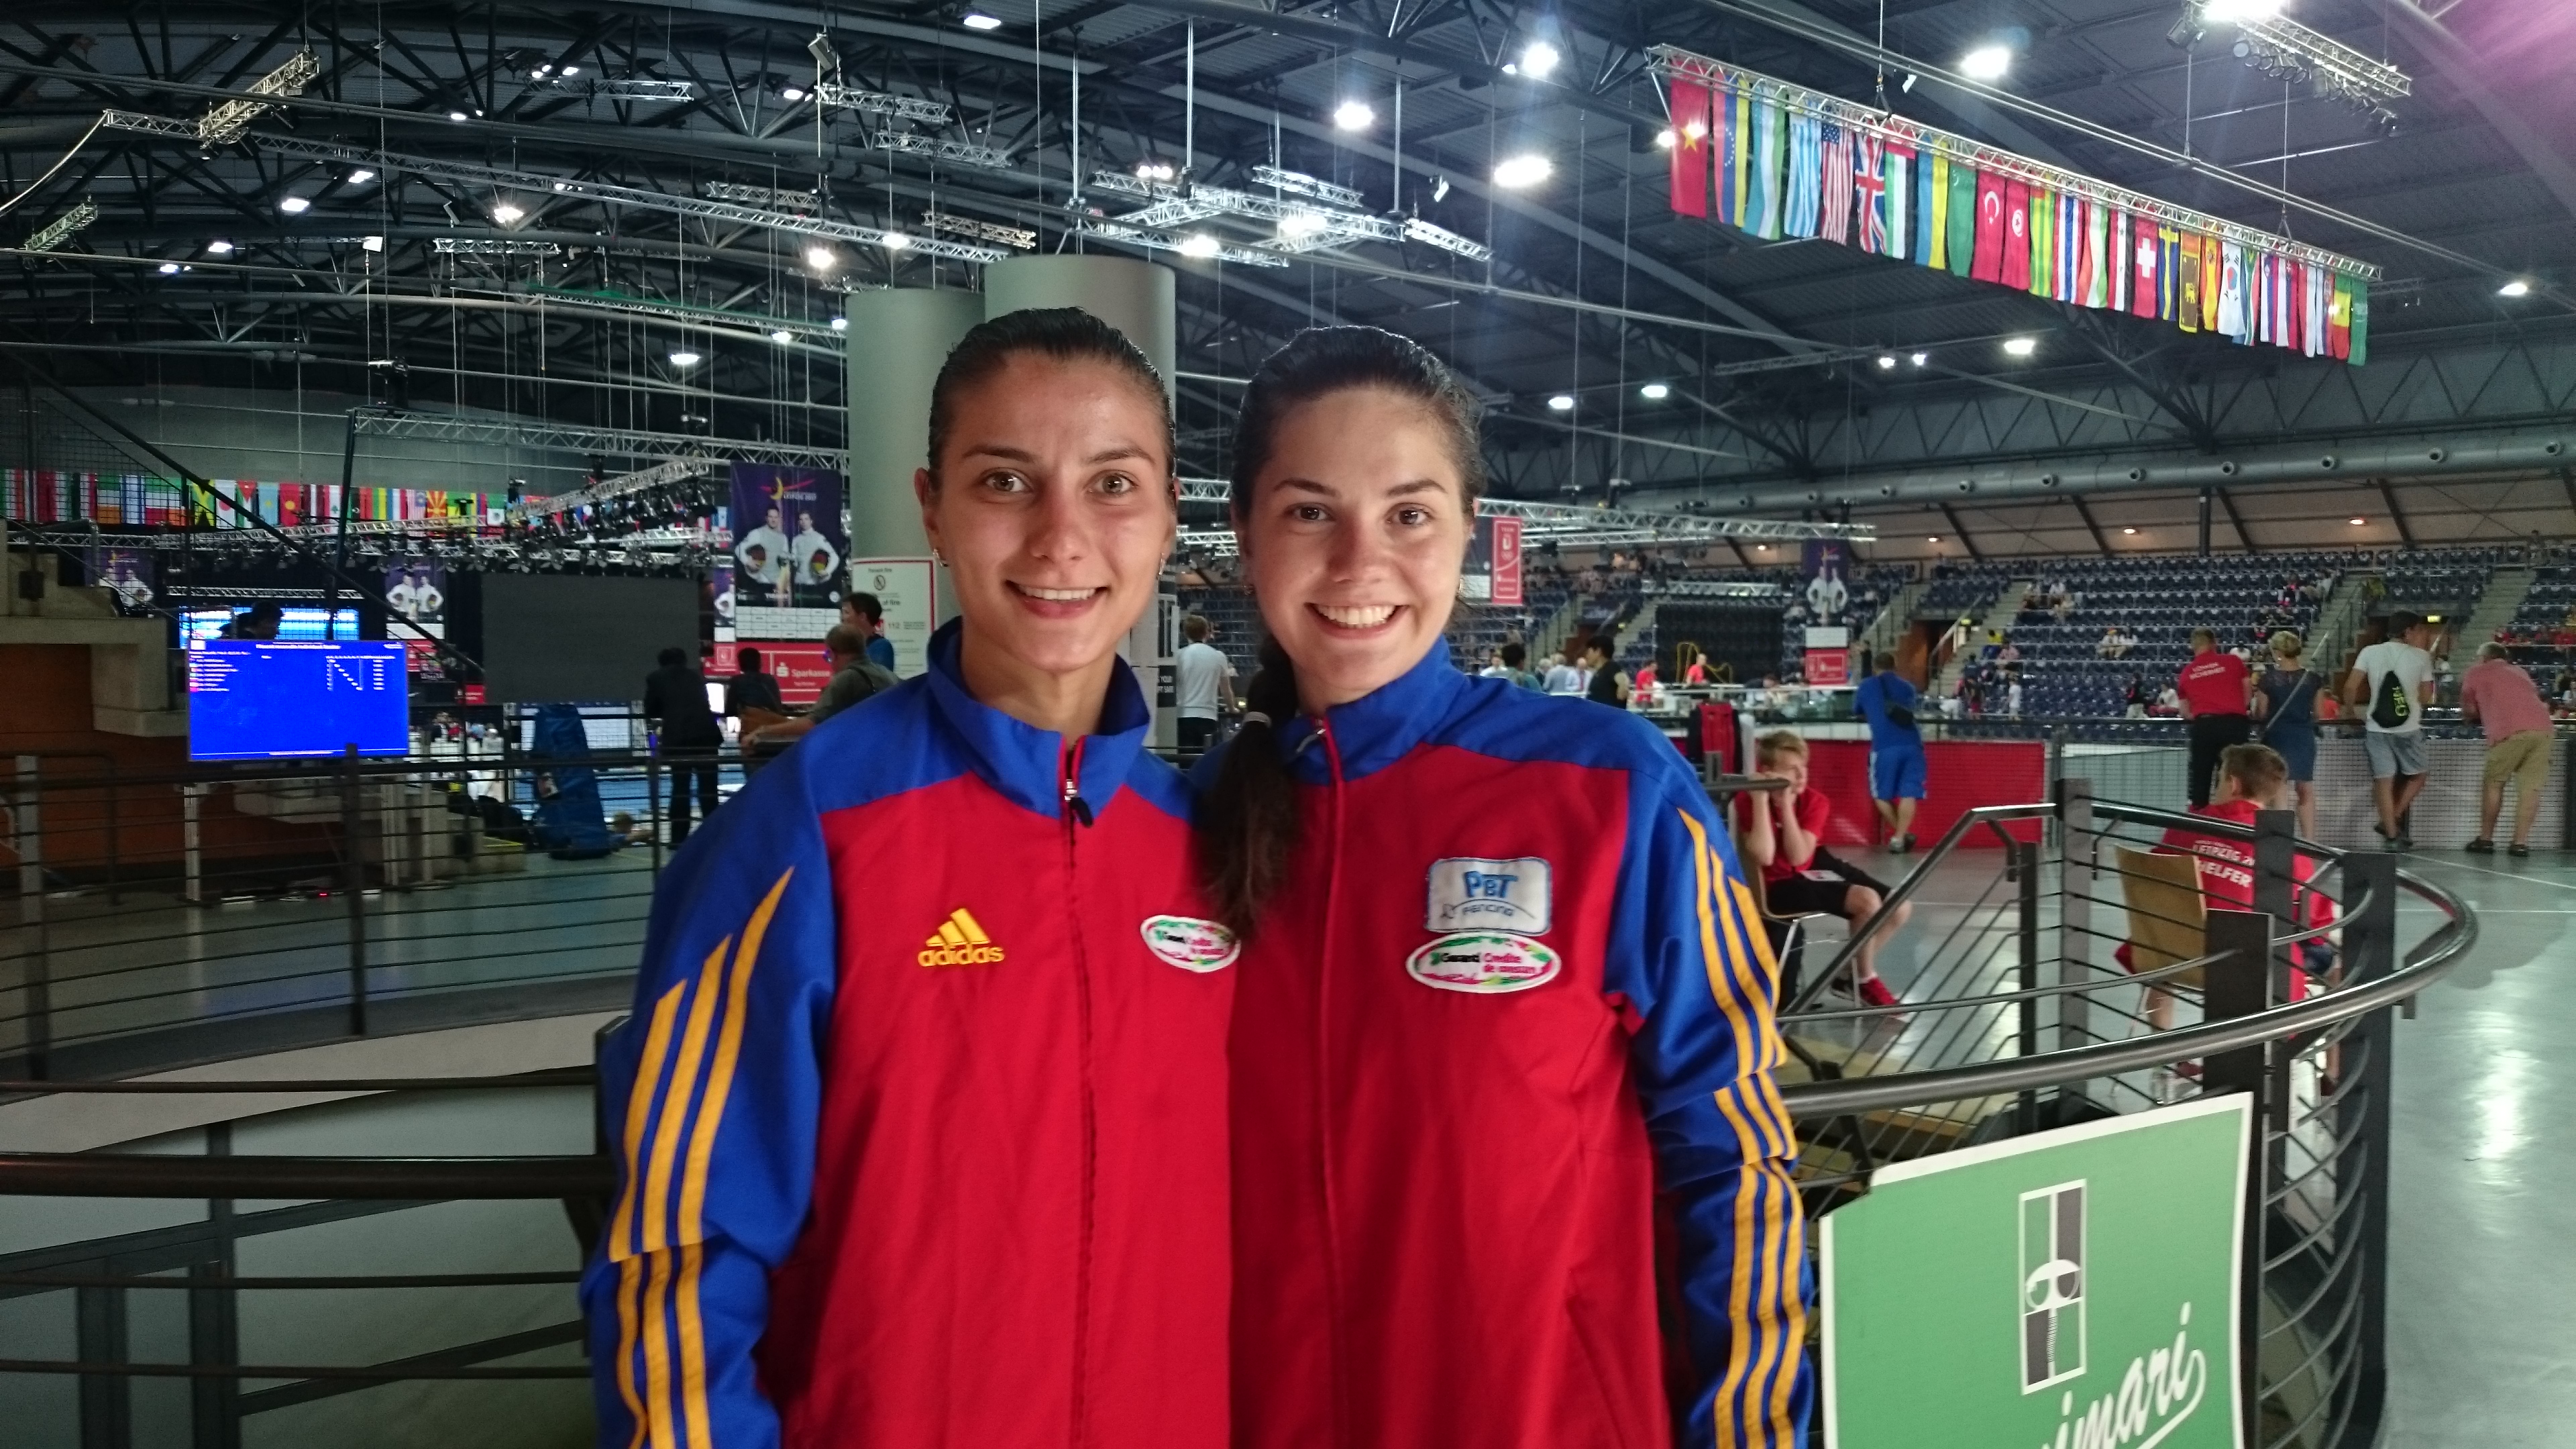 LIVE: Amalia Tătăran și Greta Vereș trag pe tabloul principal de 64 la Campionatul Mondial de la Leipzig, în proba de spadă feminin individual. Finala e LIVE pe Eurosport 2 (21:00)!